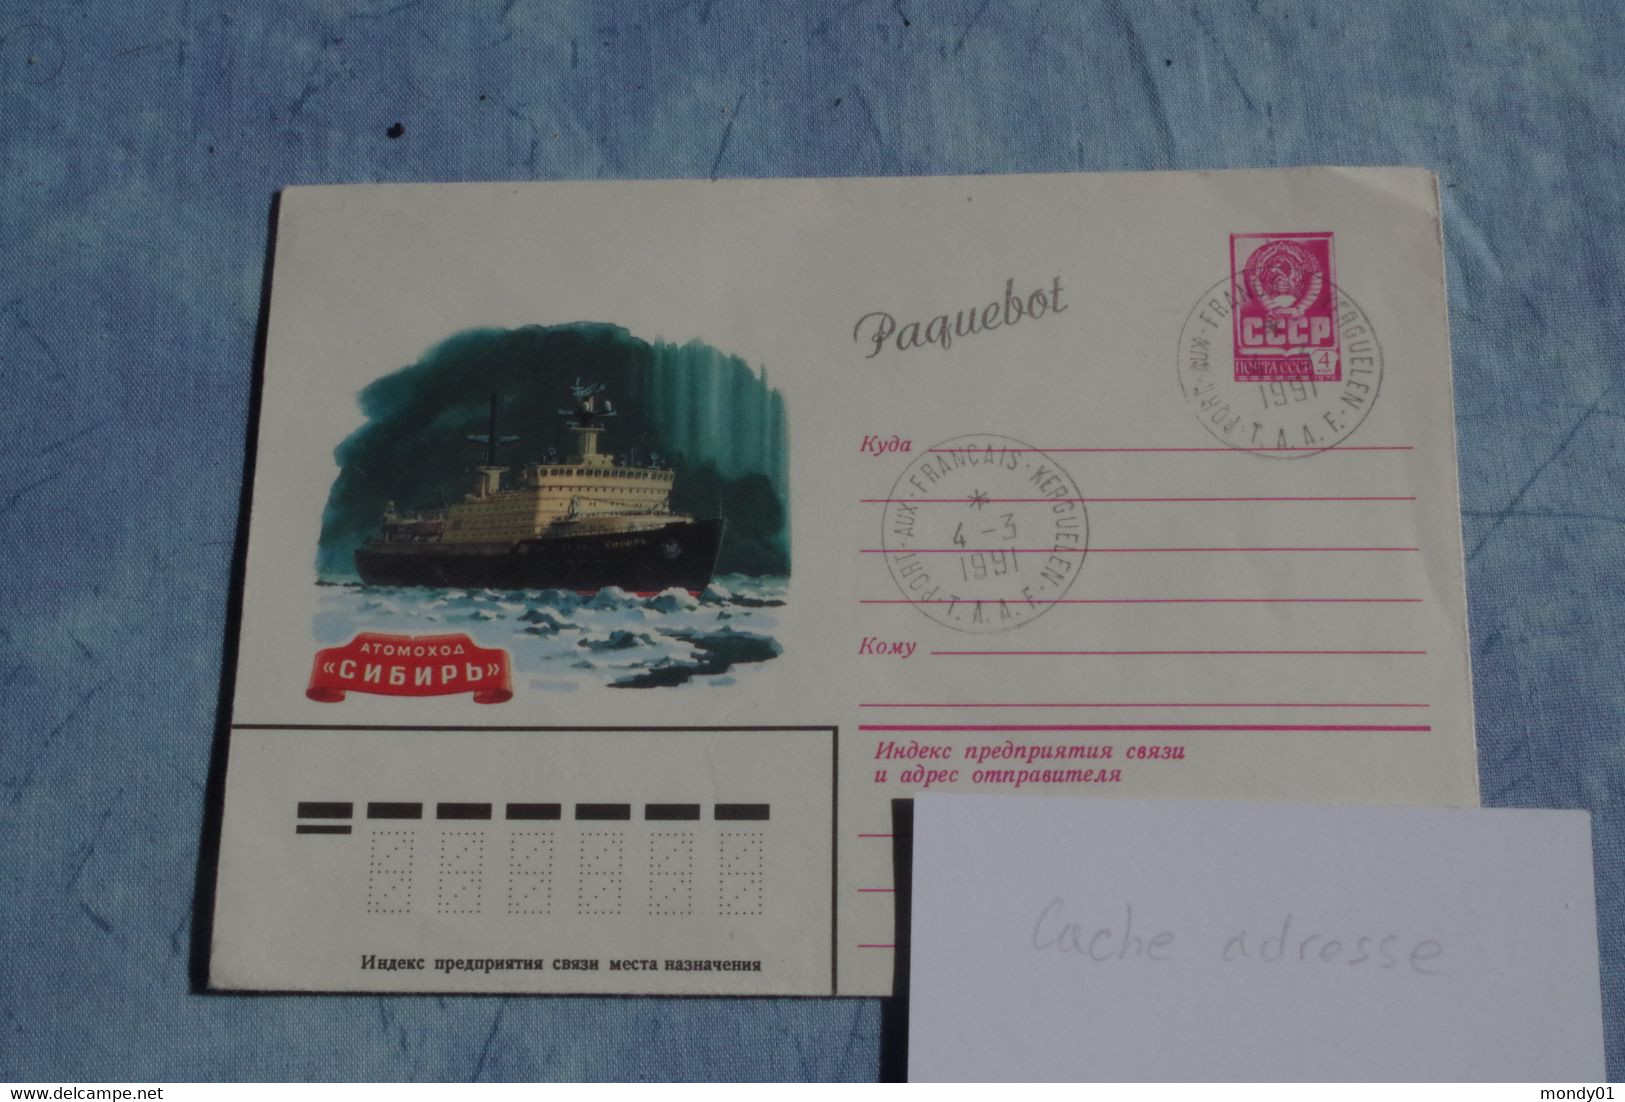 5-776  Paquebot Kerguelen 4 Mars 1991  Entier Poste URSS Navire Atomic TAAF FAAT Atome énergie Nucléaire - Explorateurs & Célébrités Polaires